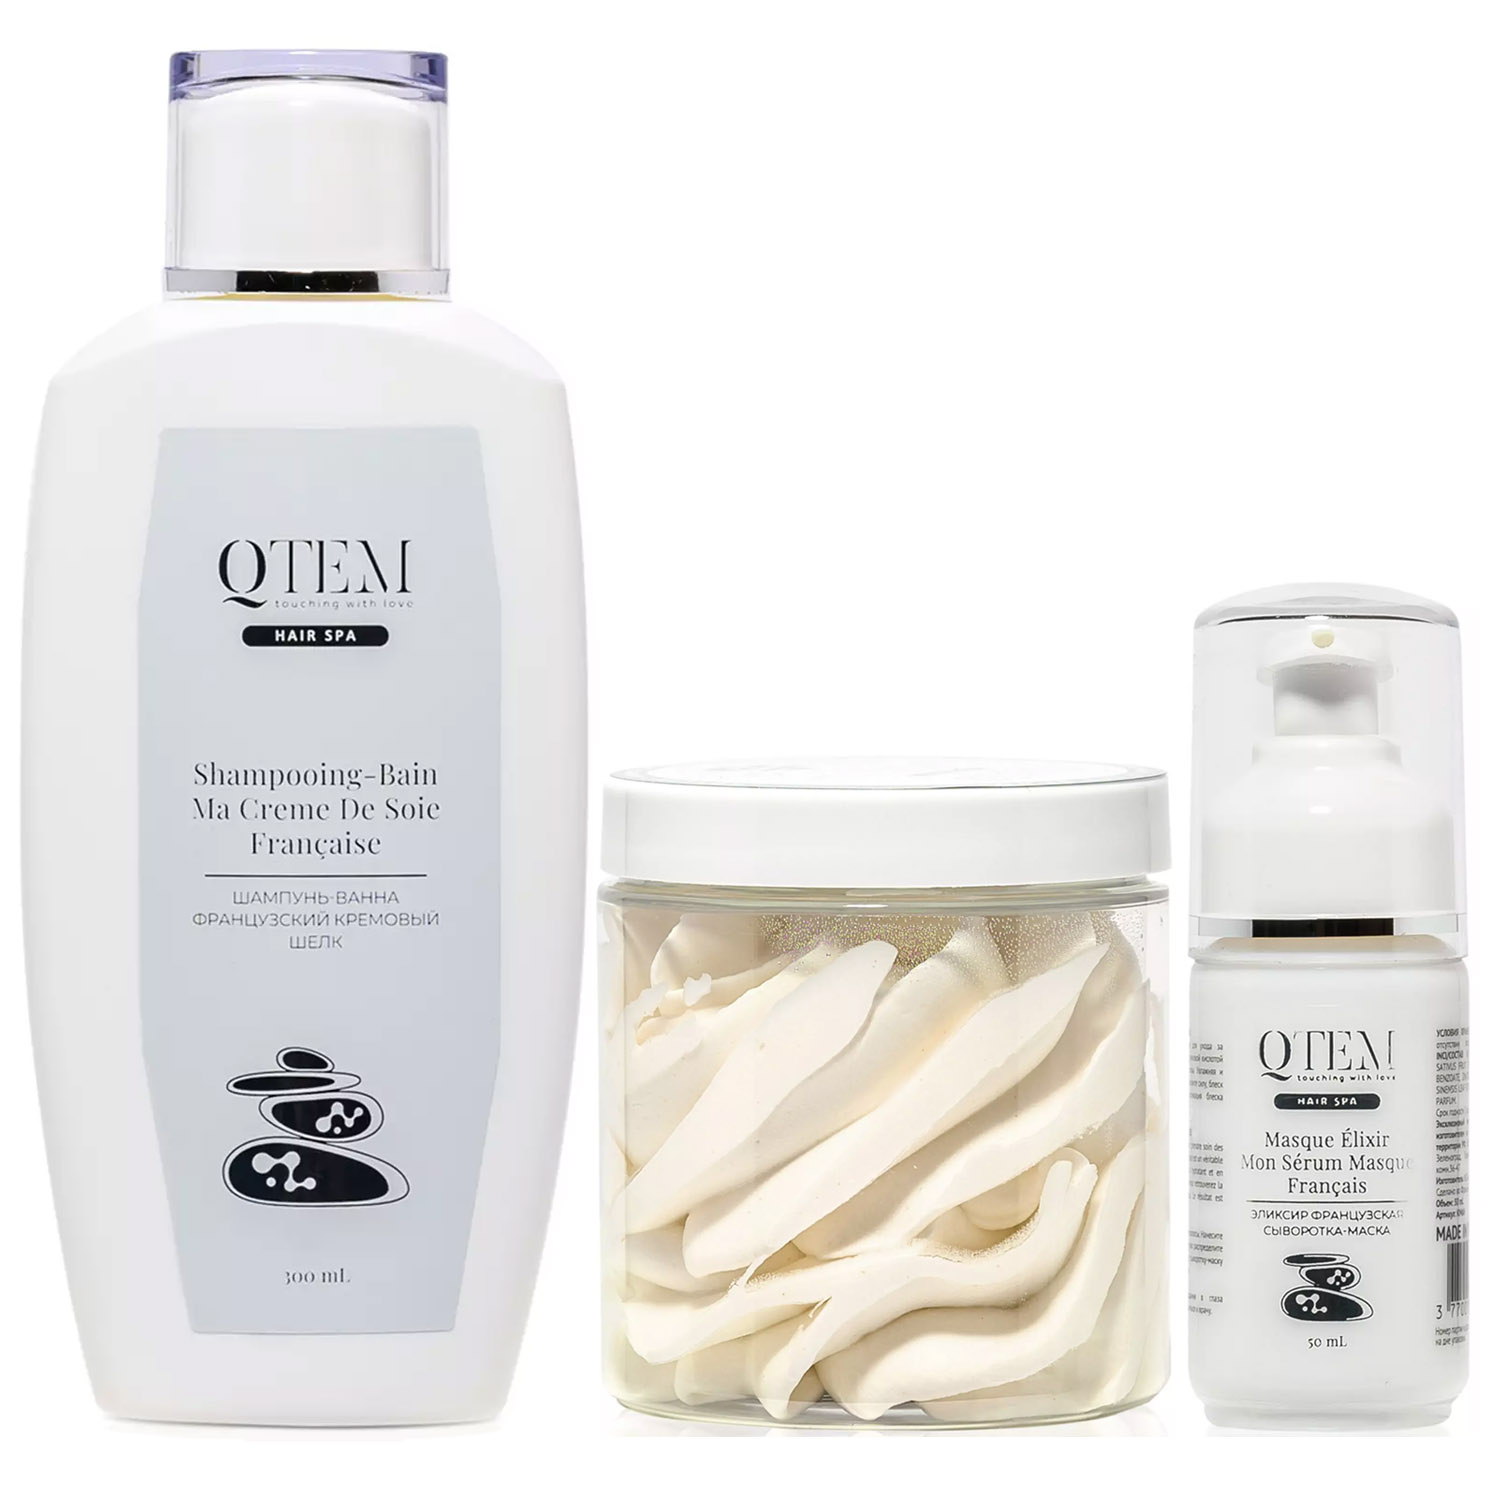 Qtem Набор для восстановления и роста сухих уставших волос, 3 средства (Qtem, Hair Spa) набор для восстановления прямых волос 4 шт шампунь маска липидная маска несмываемая сыворотка